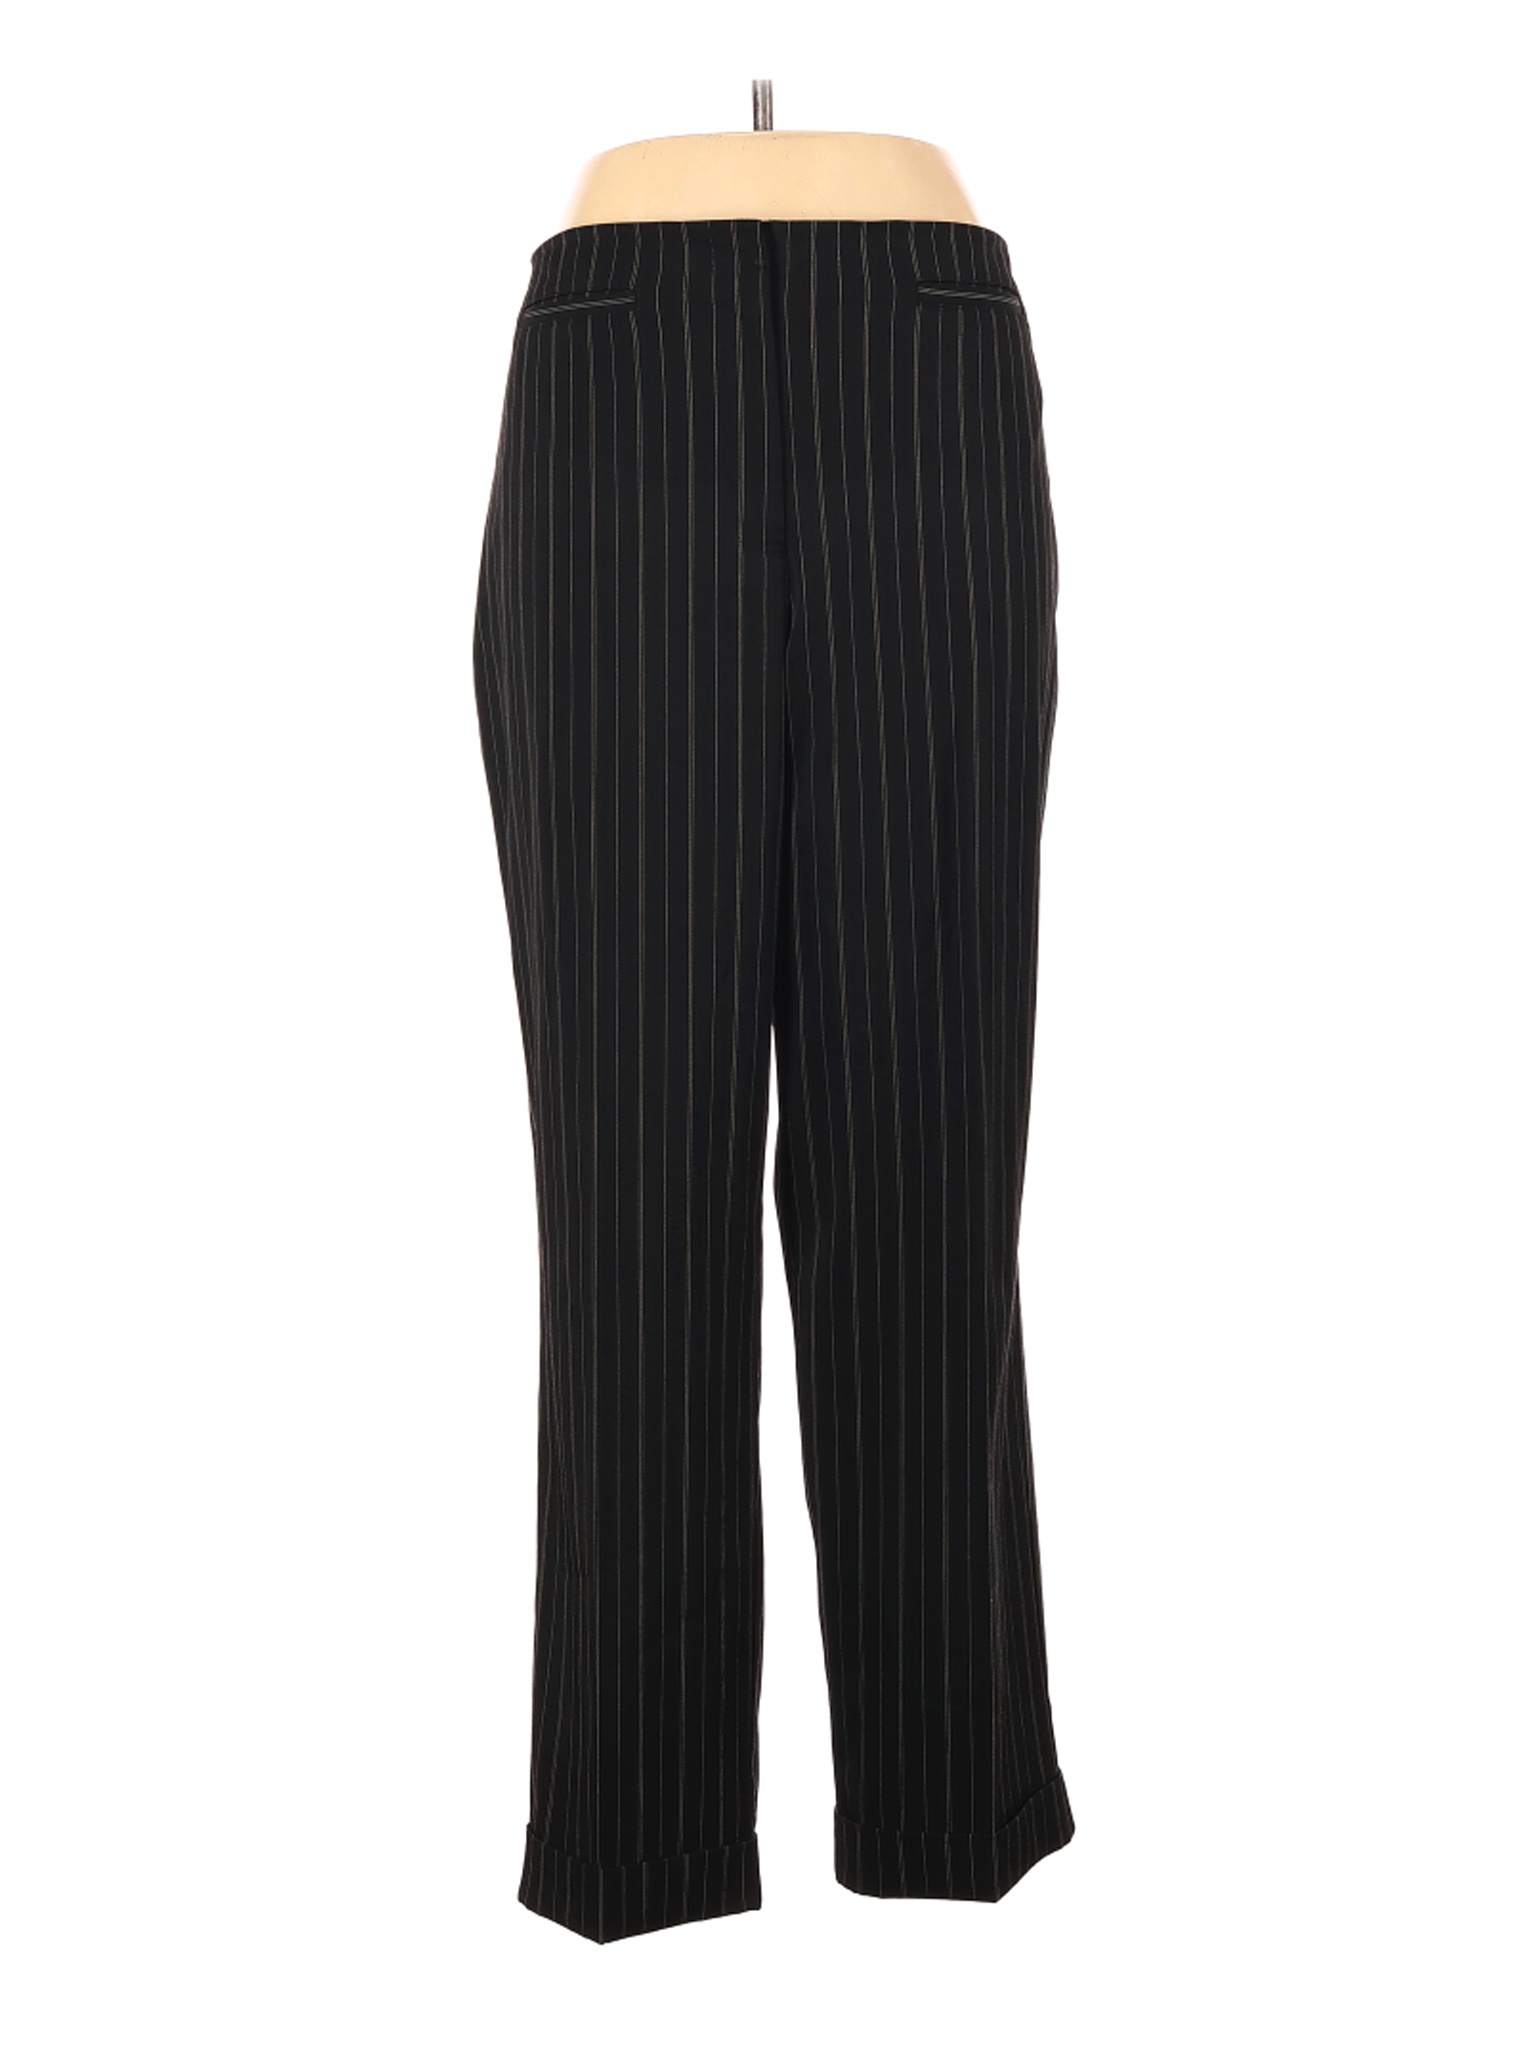 DressBarn Women Black Dress Pants 16 | eBay